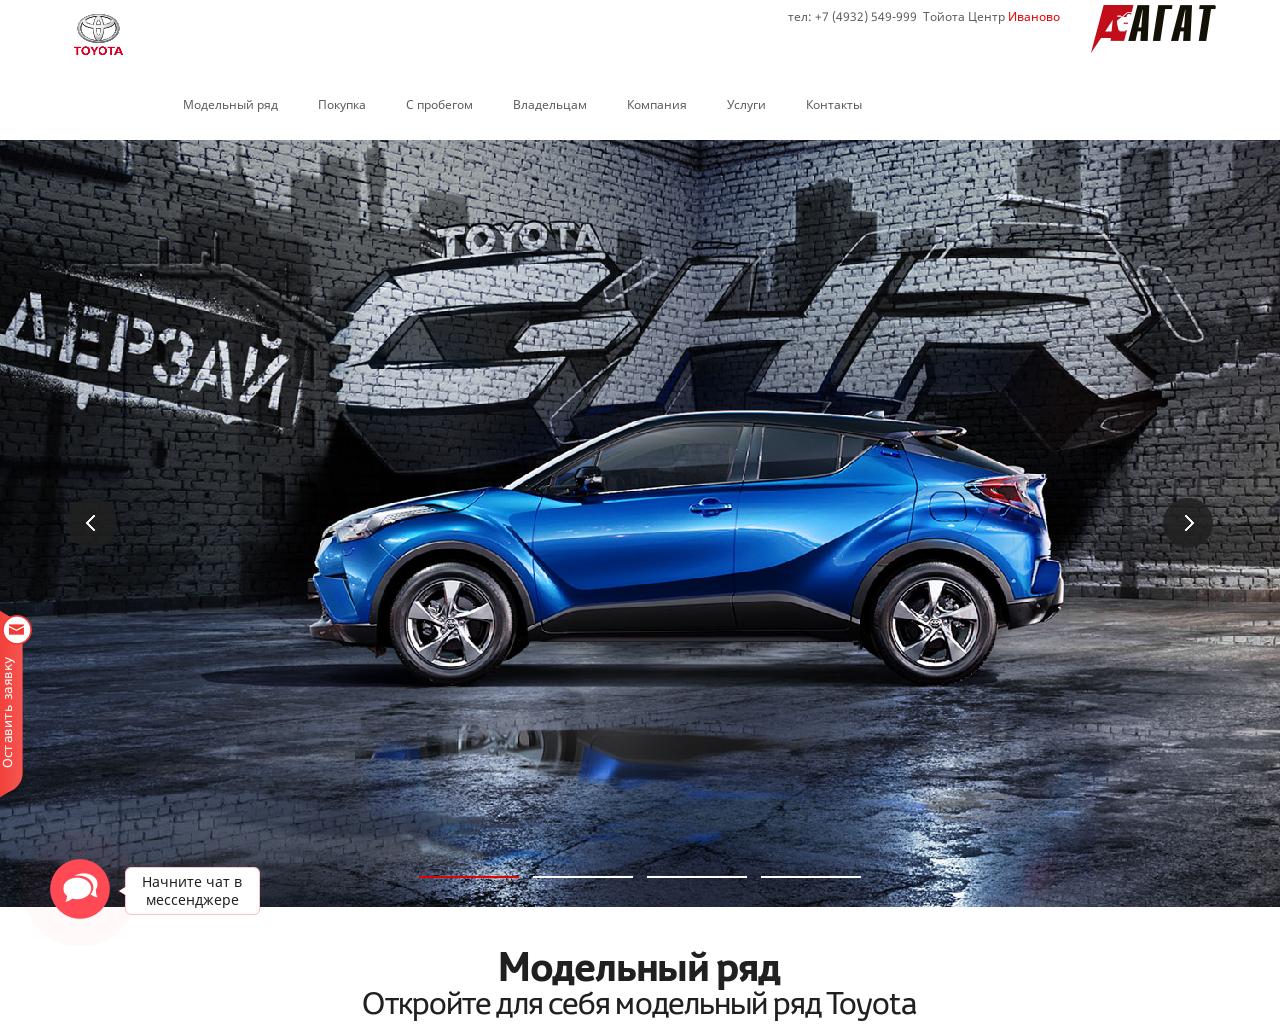 Изображение сайта agat37-toyota.ru в разрешении 1280x1024